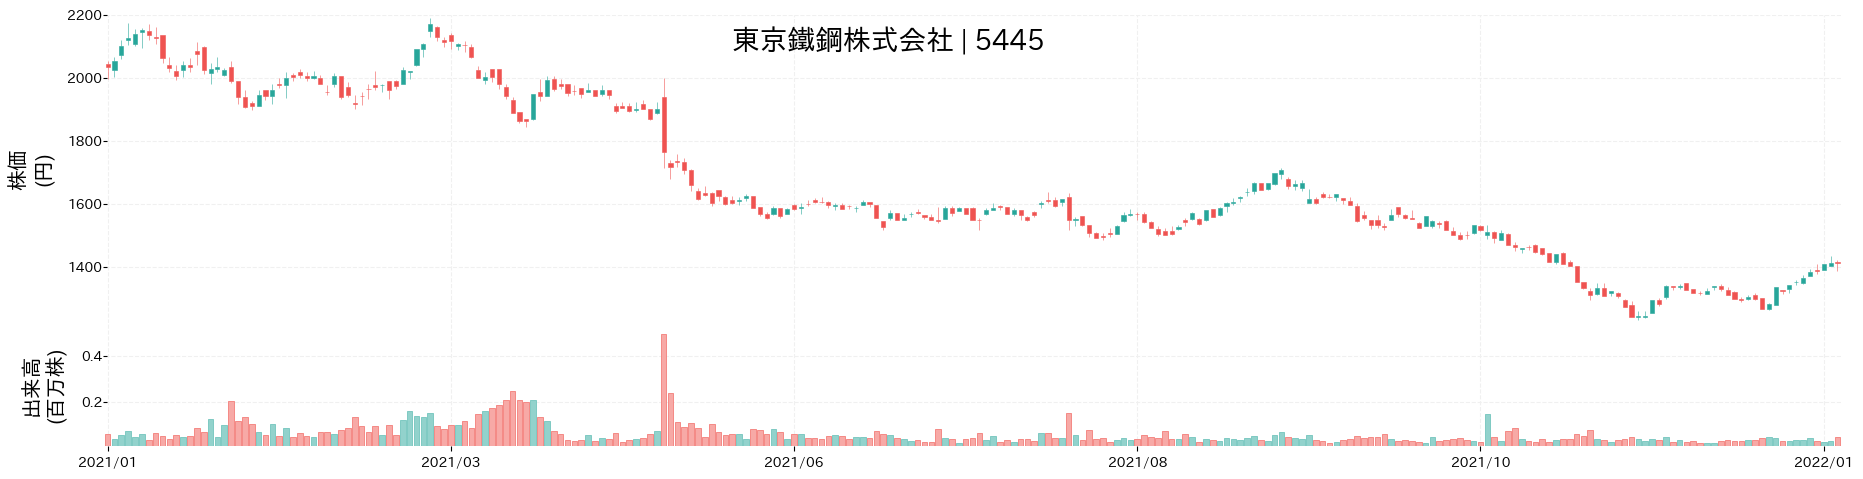 東京鐵鋼の株価推移(2021)